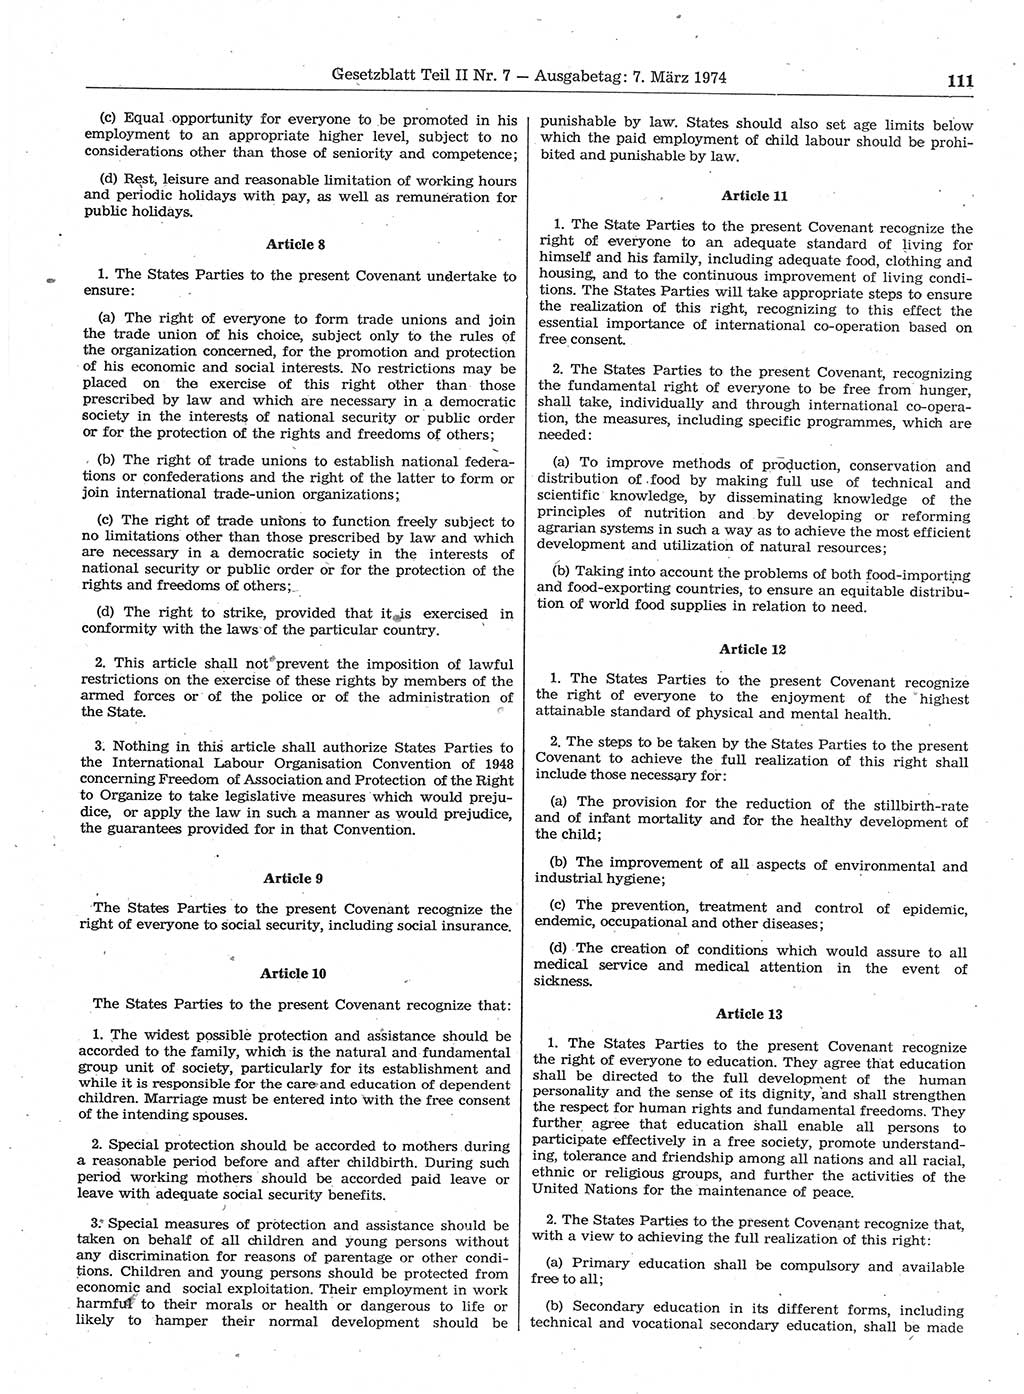 Gesetzblatt (GBl.) der Deutschen Demokratischen Republik (DDR) Teil ⅠⅠ 1974, Seite 111 (GBl. DDR ⅠⅠ 1974, S. 111)